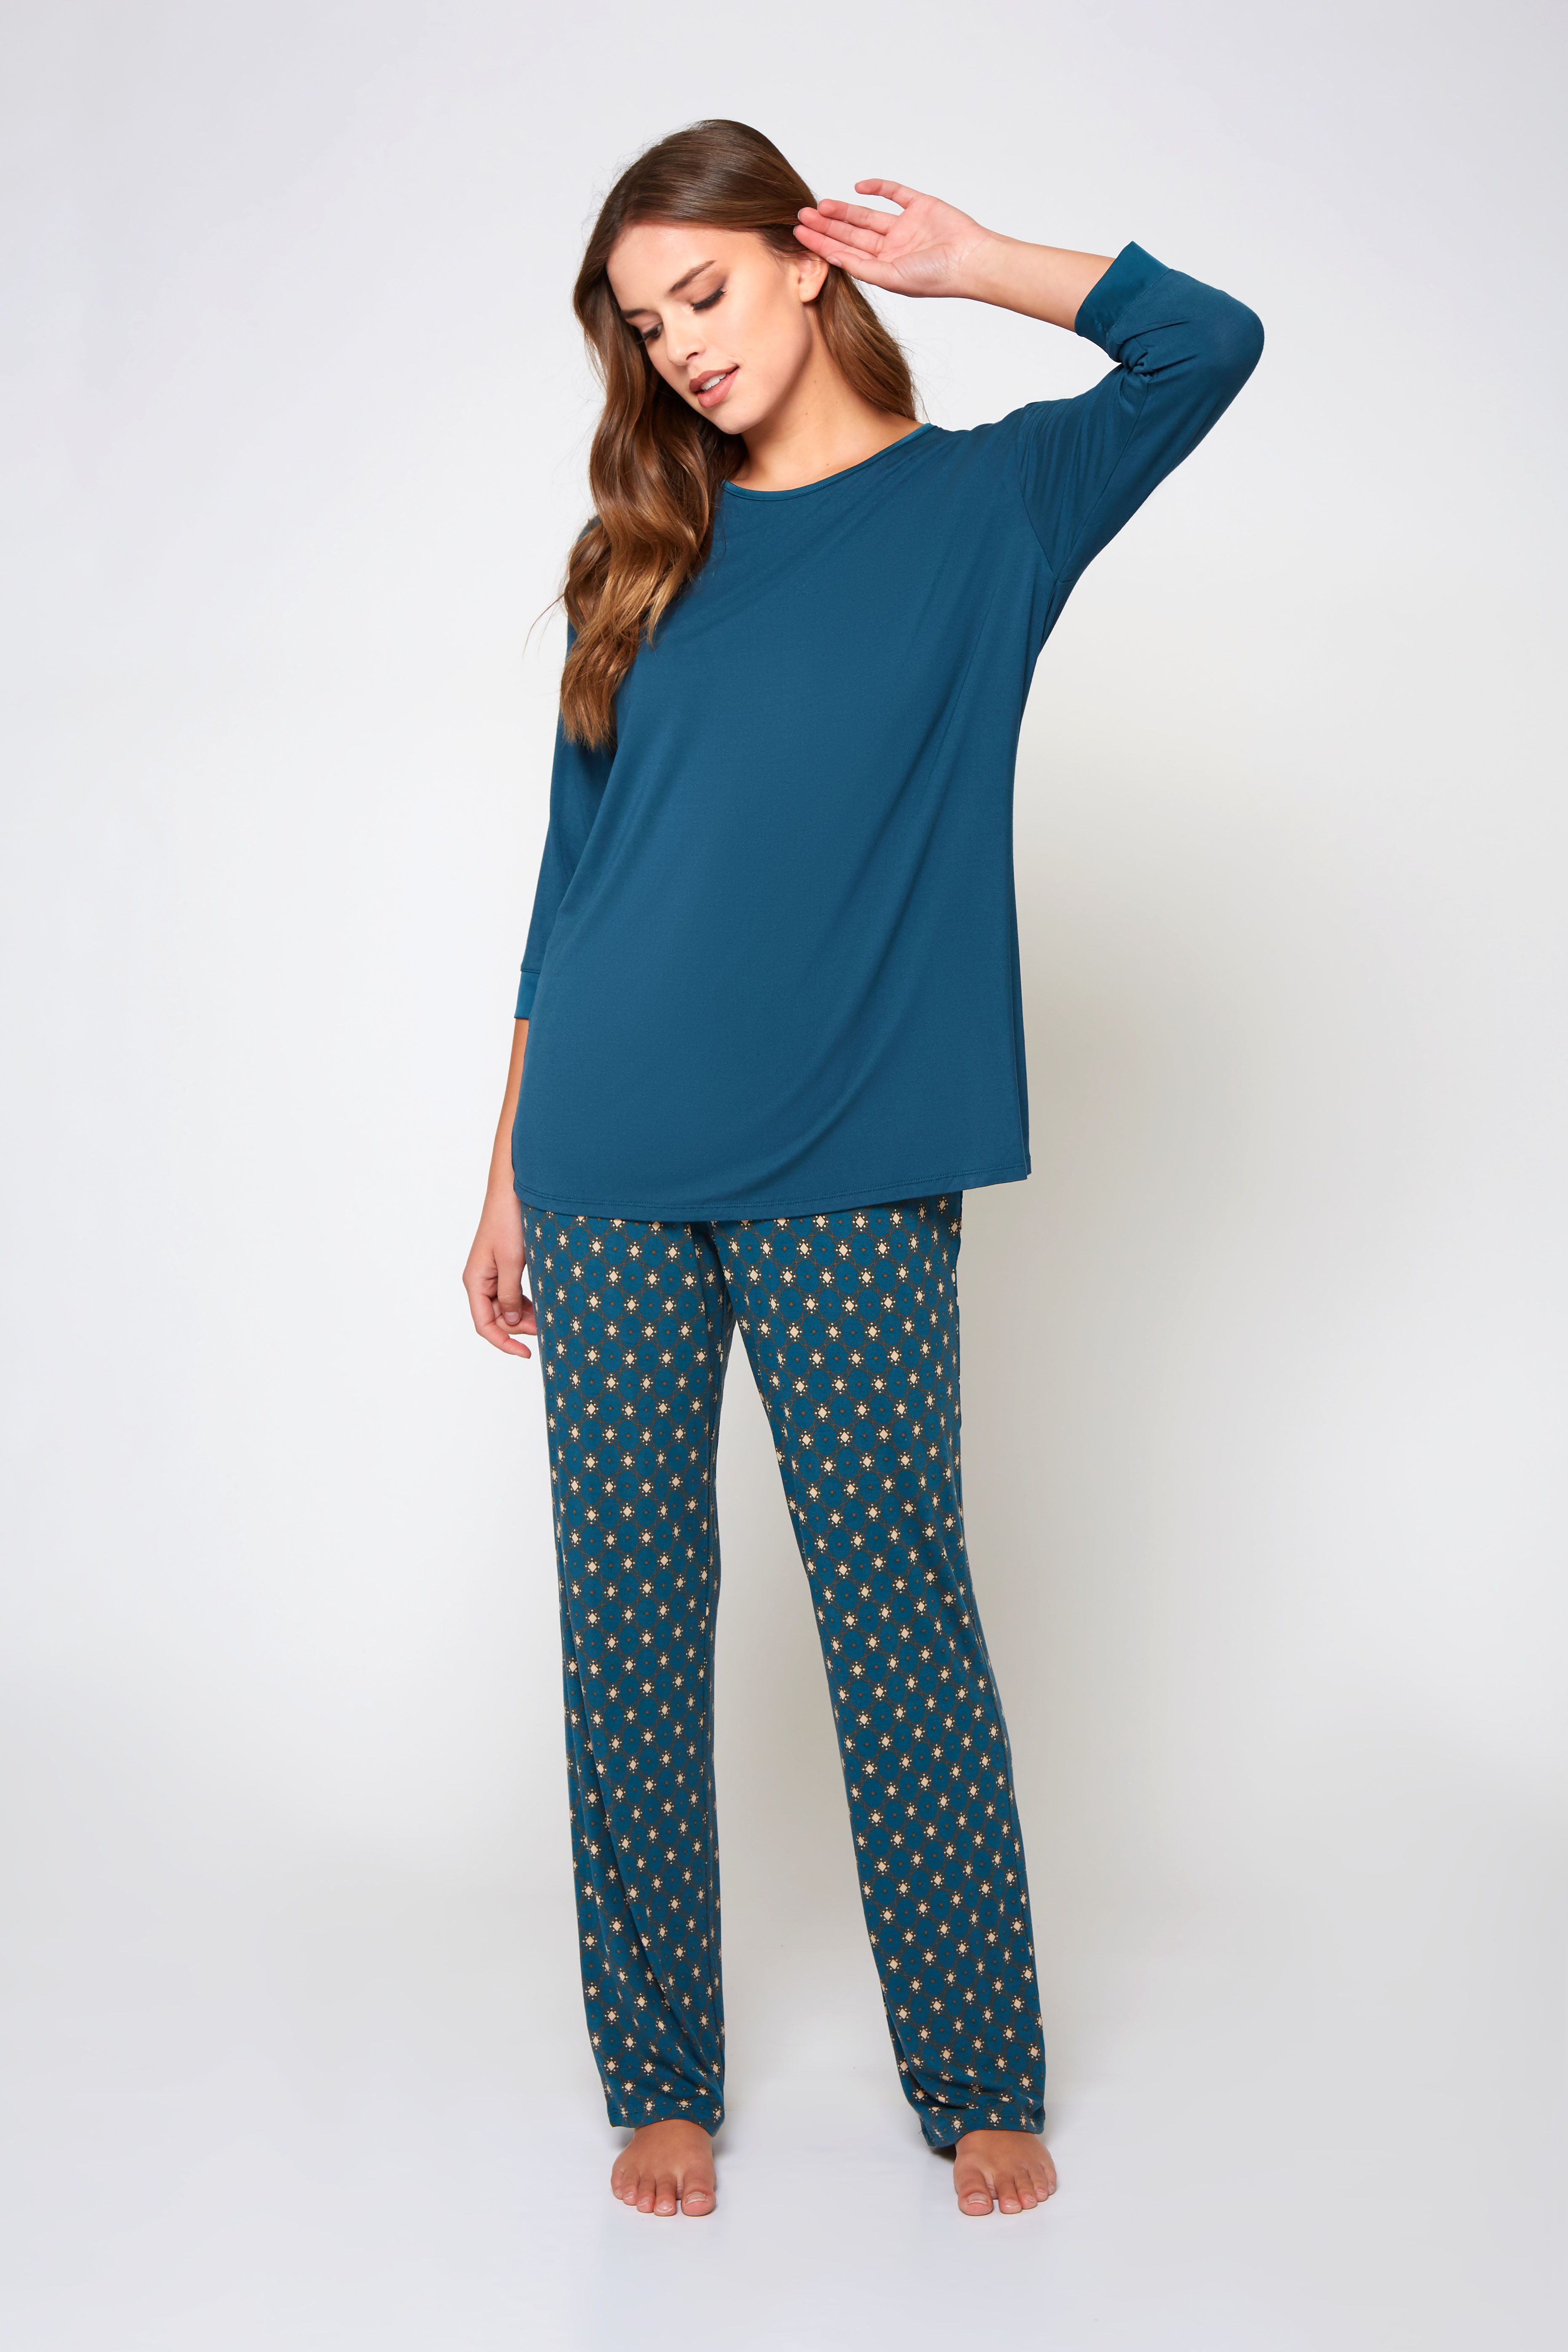 Malachite Pajama Set - 78174 Teal